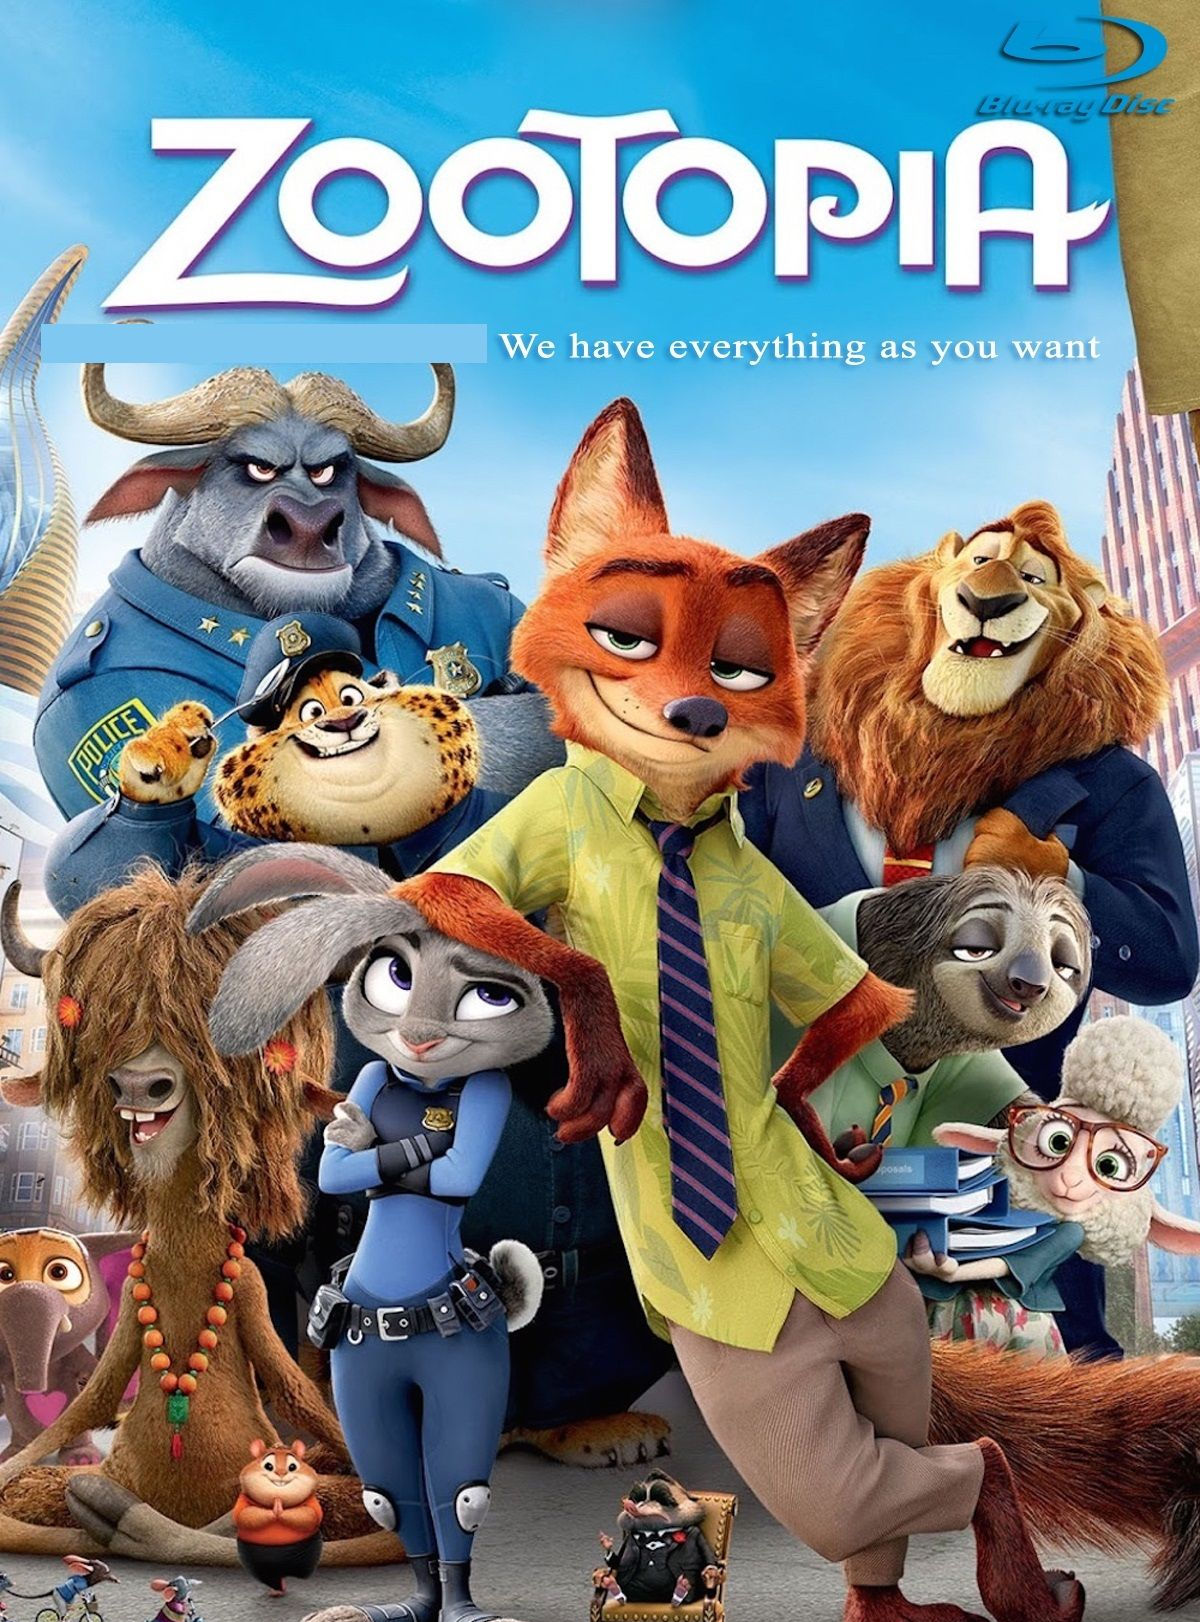 ดูหนังออนไลน์ฟรี Zootopia (2016) ซูโทเปีย นครสัตว์มหาสนุก